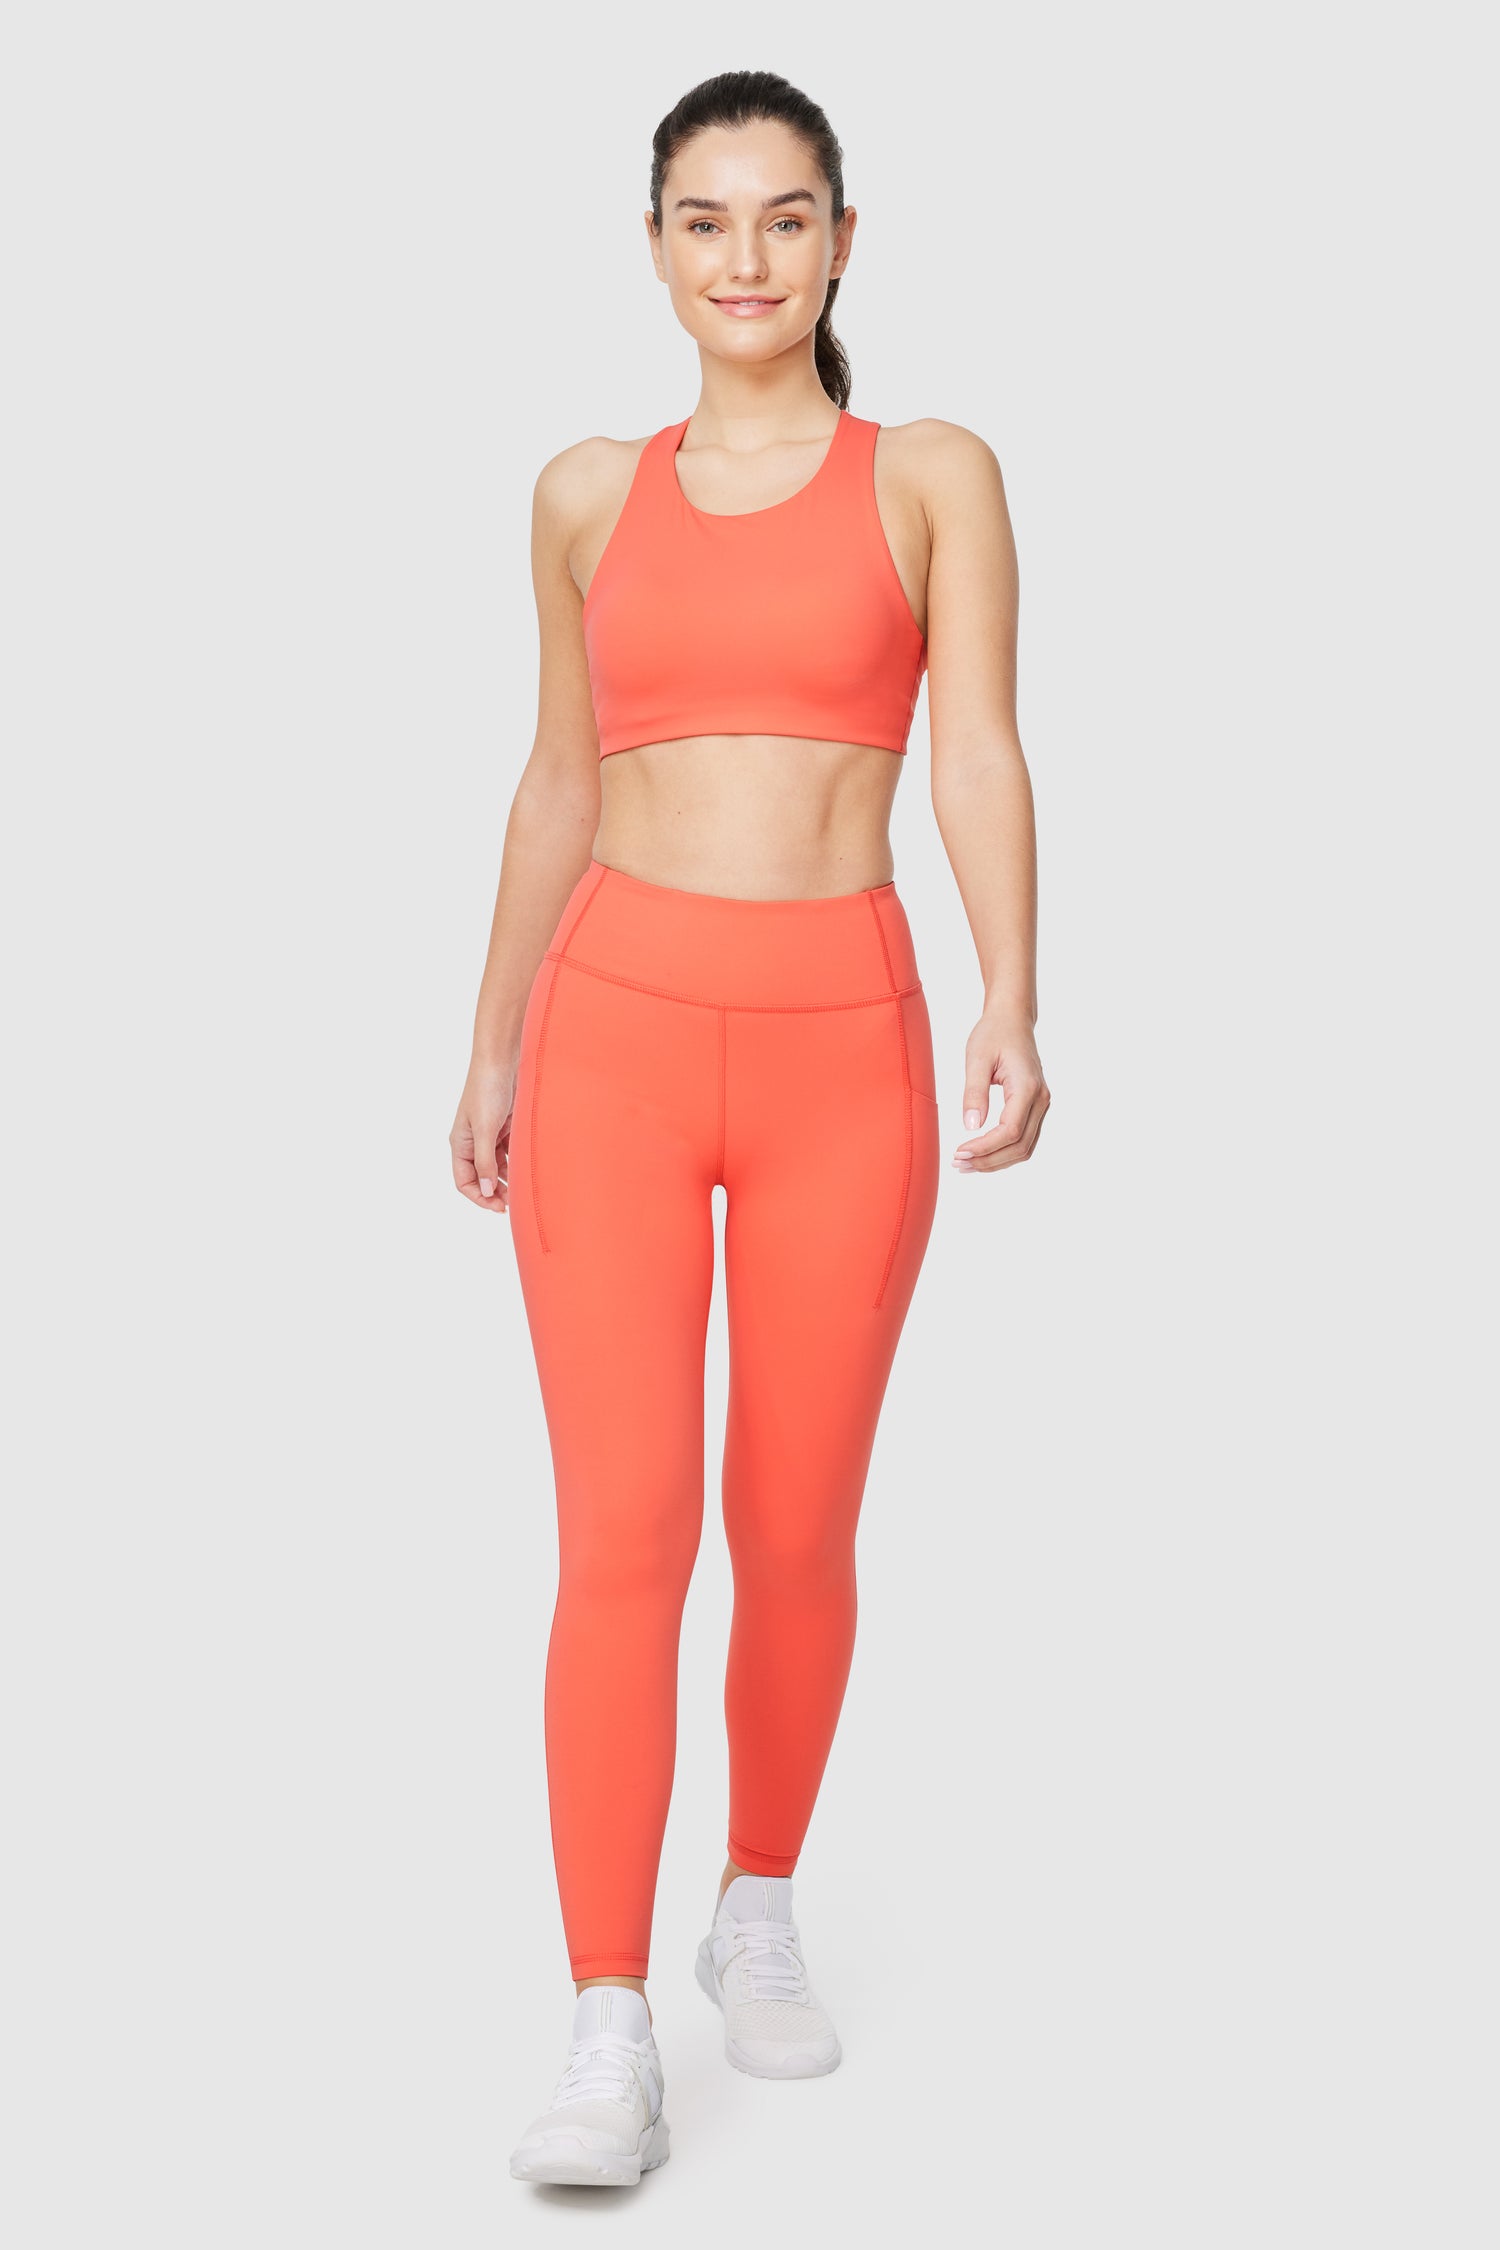 Avia pink orange leggings kids size Medium